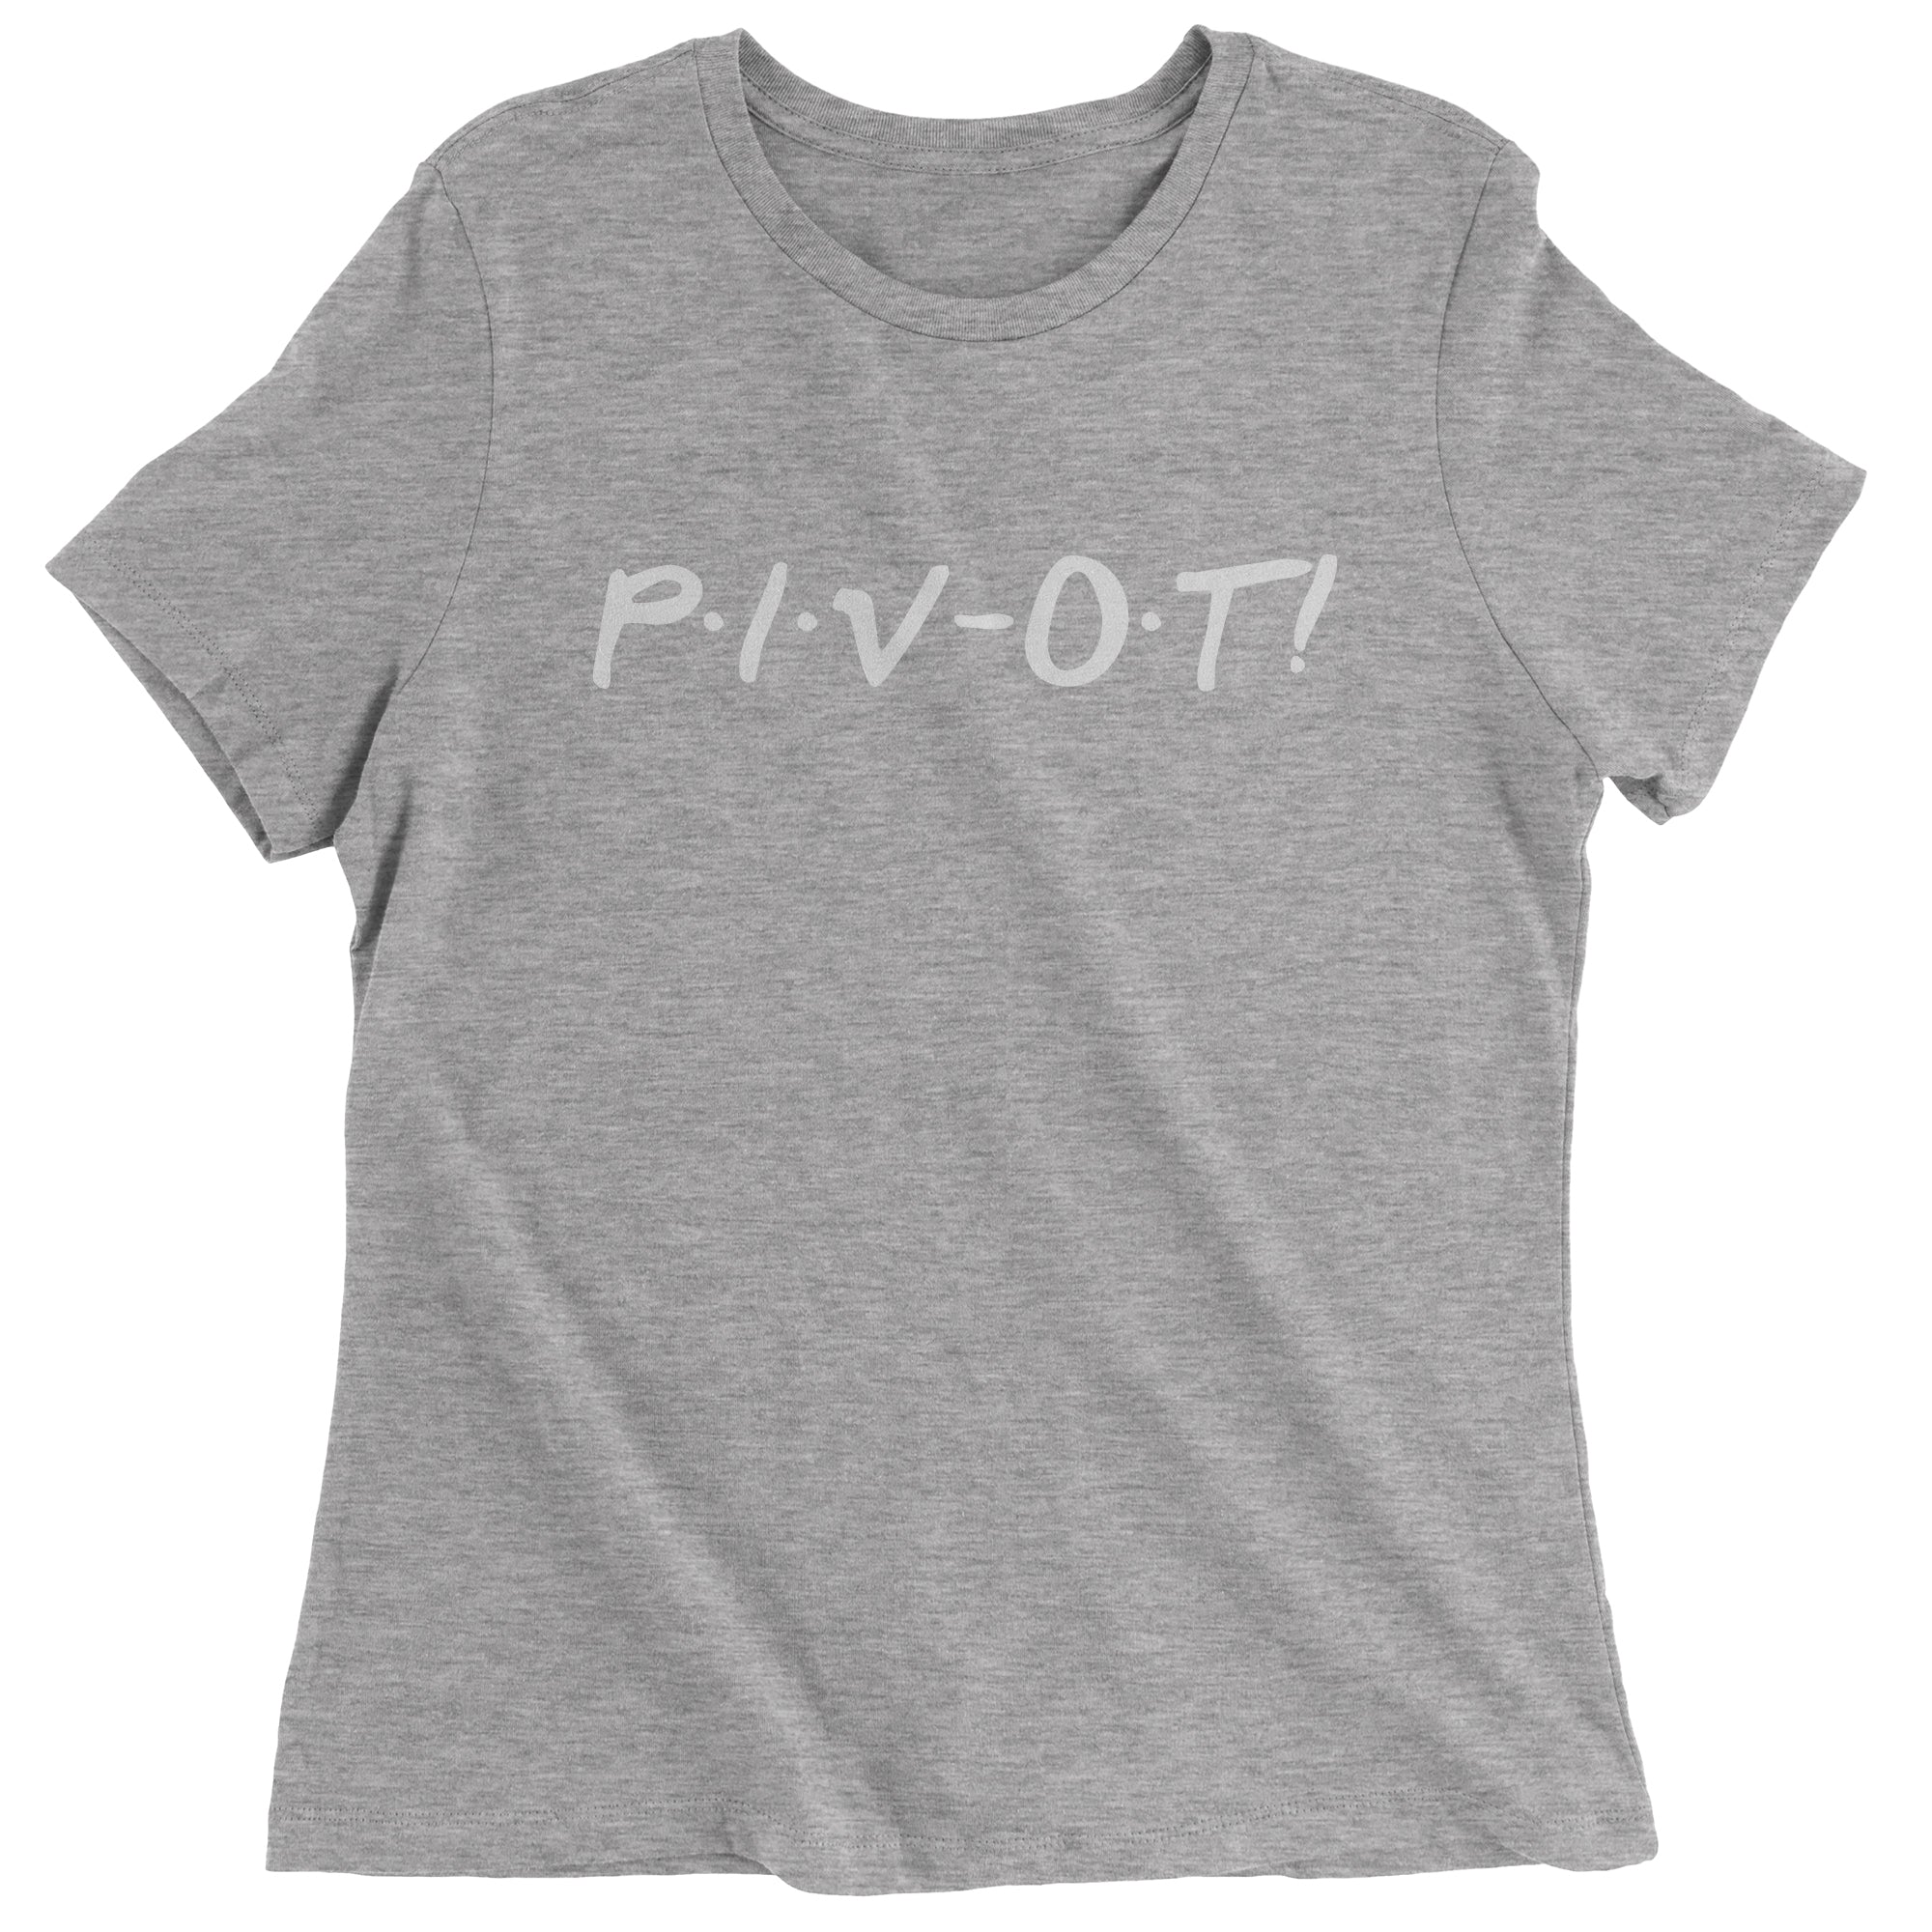 Pivot Friends Women's T-Shirt